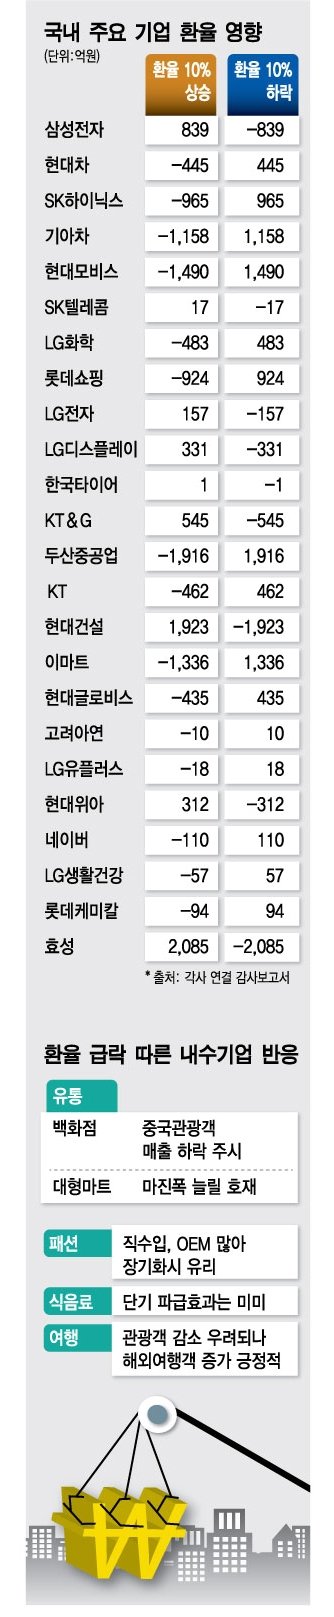 韓 대표기업 30곳 환율 10% 변동시 순이익 ±1.6조